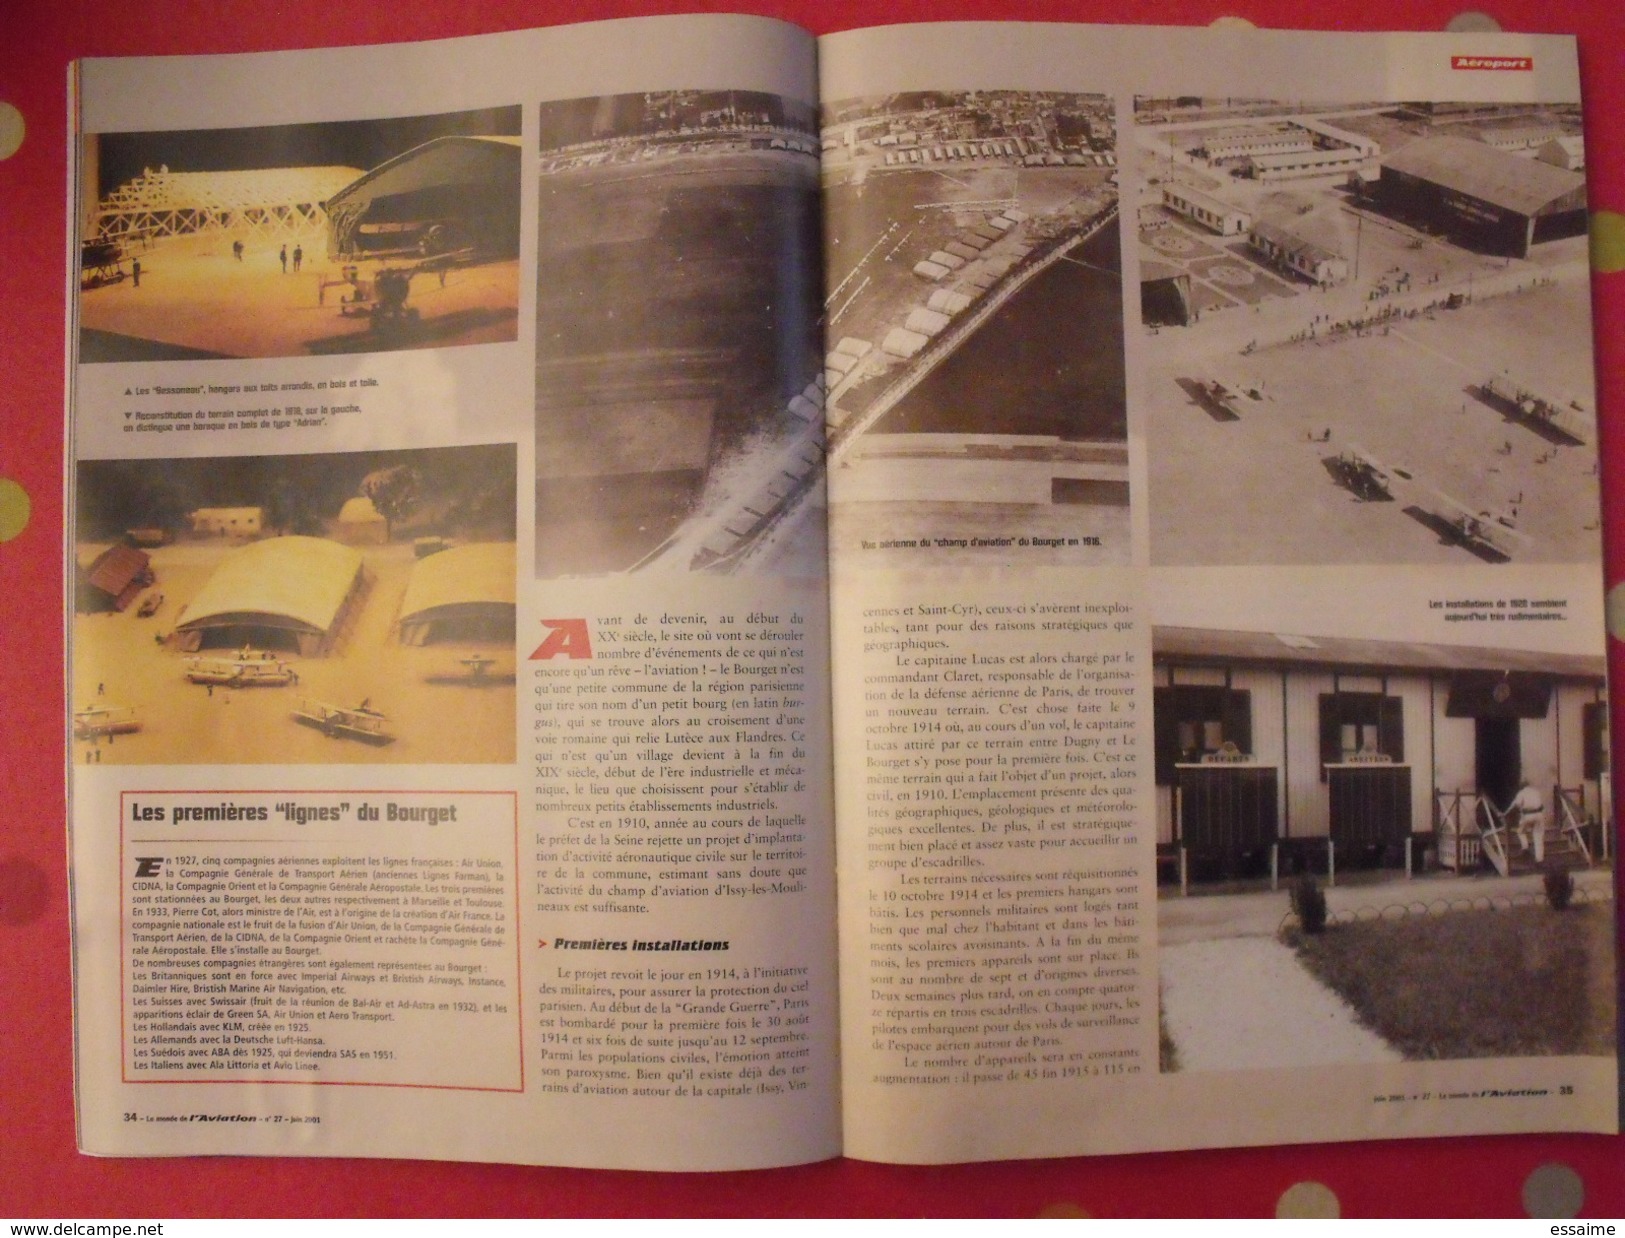 3 revues Le Monde de l'Aviation n° 9, 26, 27 (1999, 2001). Harrier, le bourget 2001 mirage III alizé